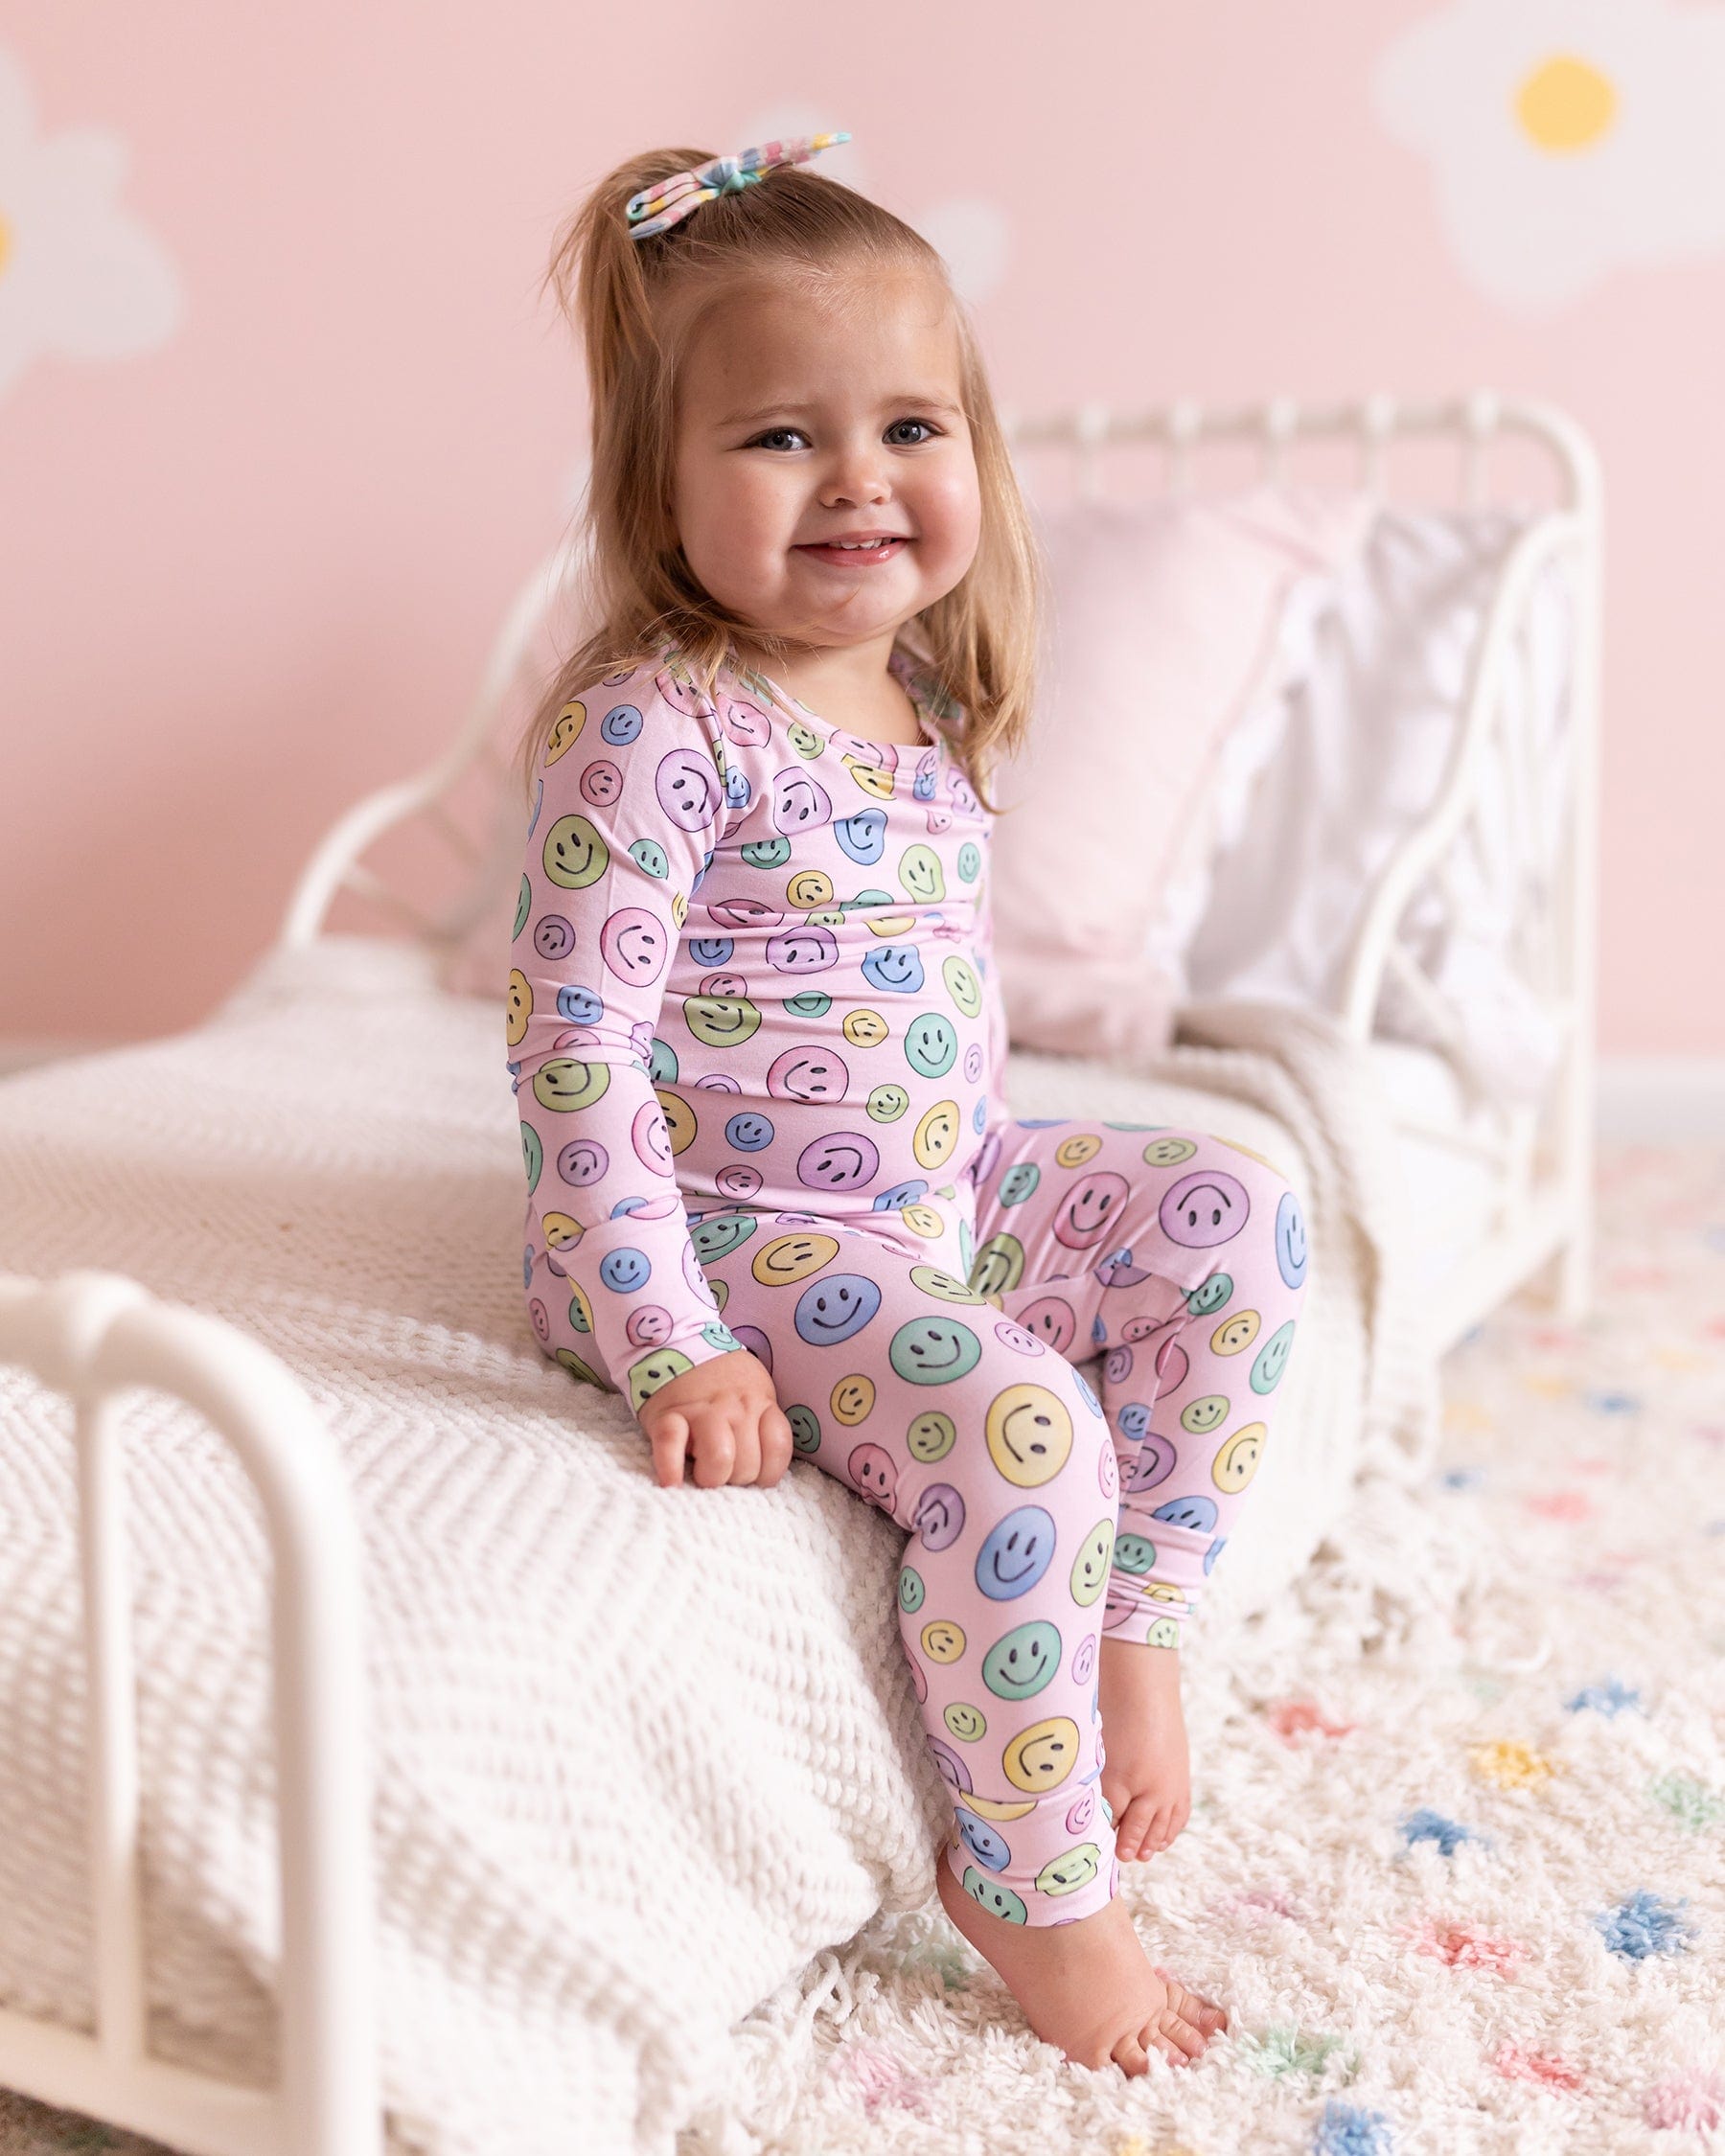 Smiley Pajama Set